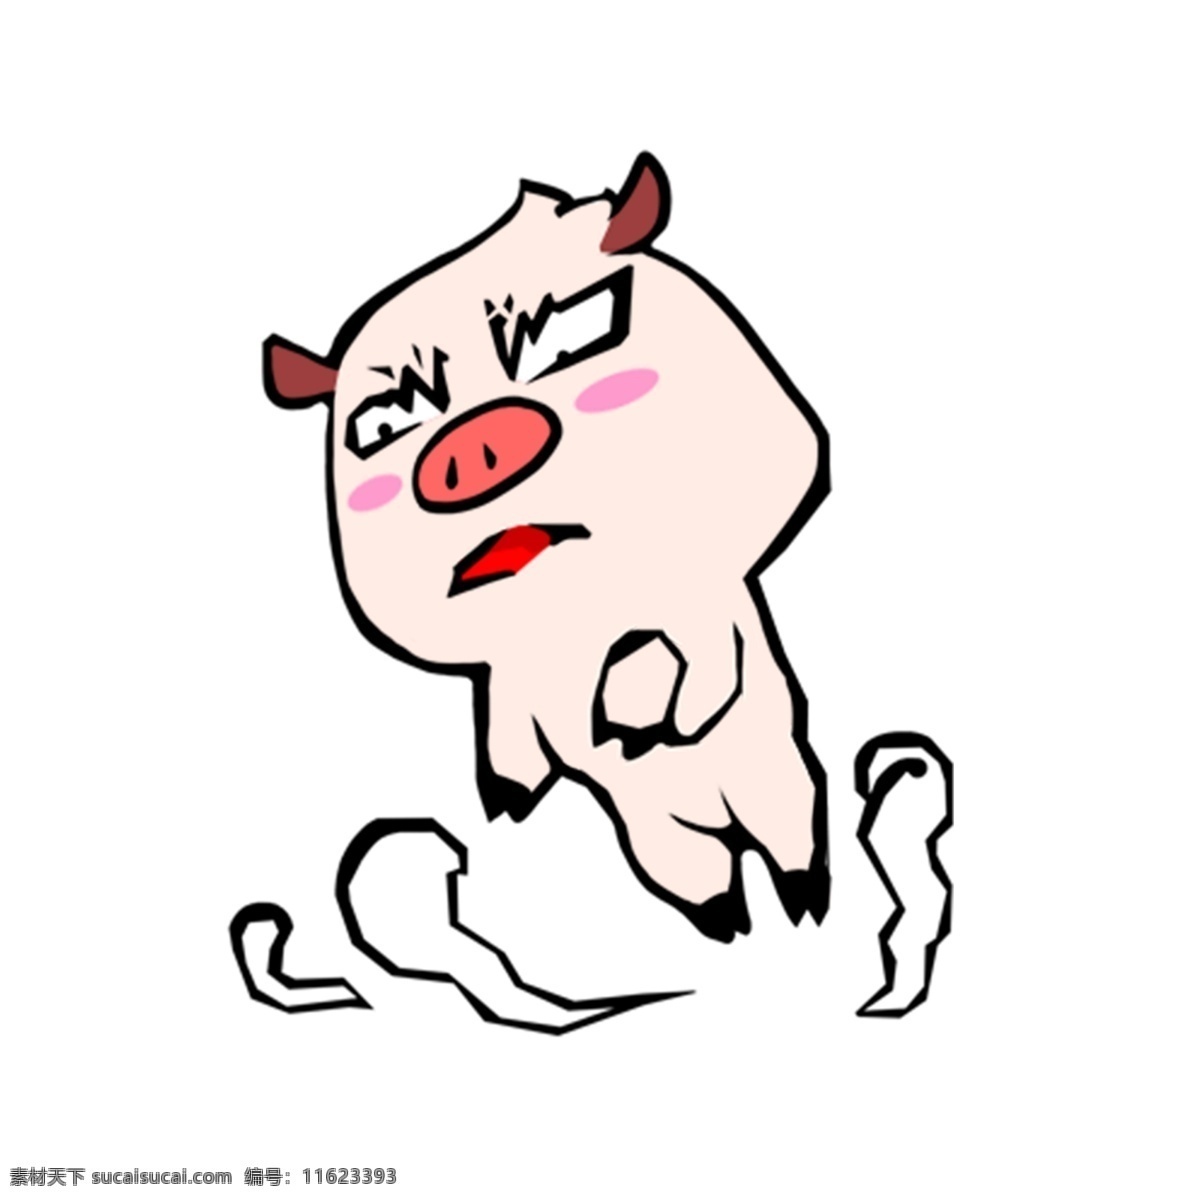 猪年 生肖 2019 可爱 小 猪 奔跑 卡通 ps 猪年生肖 可爱卡通 小猪奔跑 ps素材